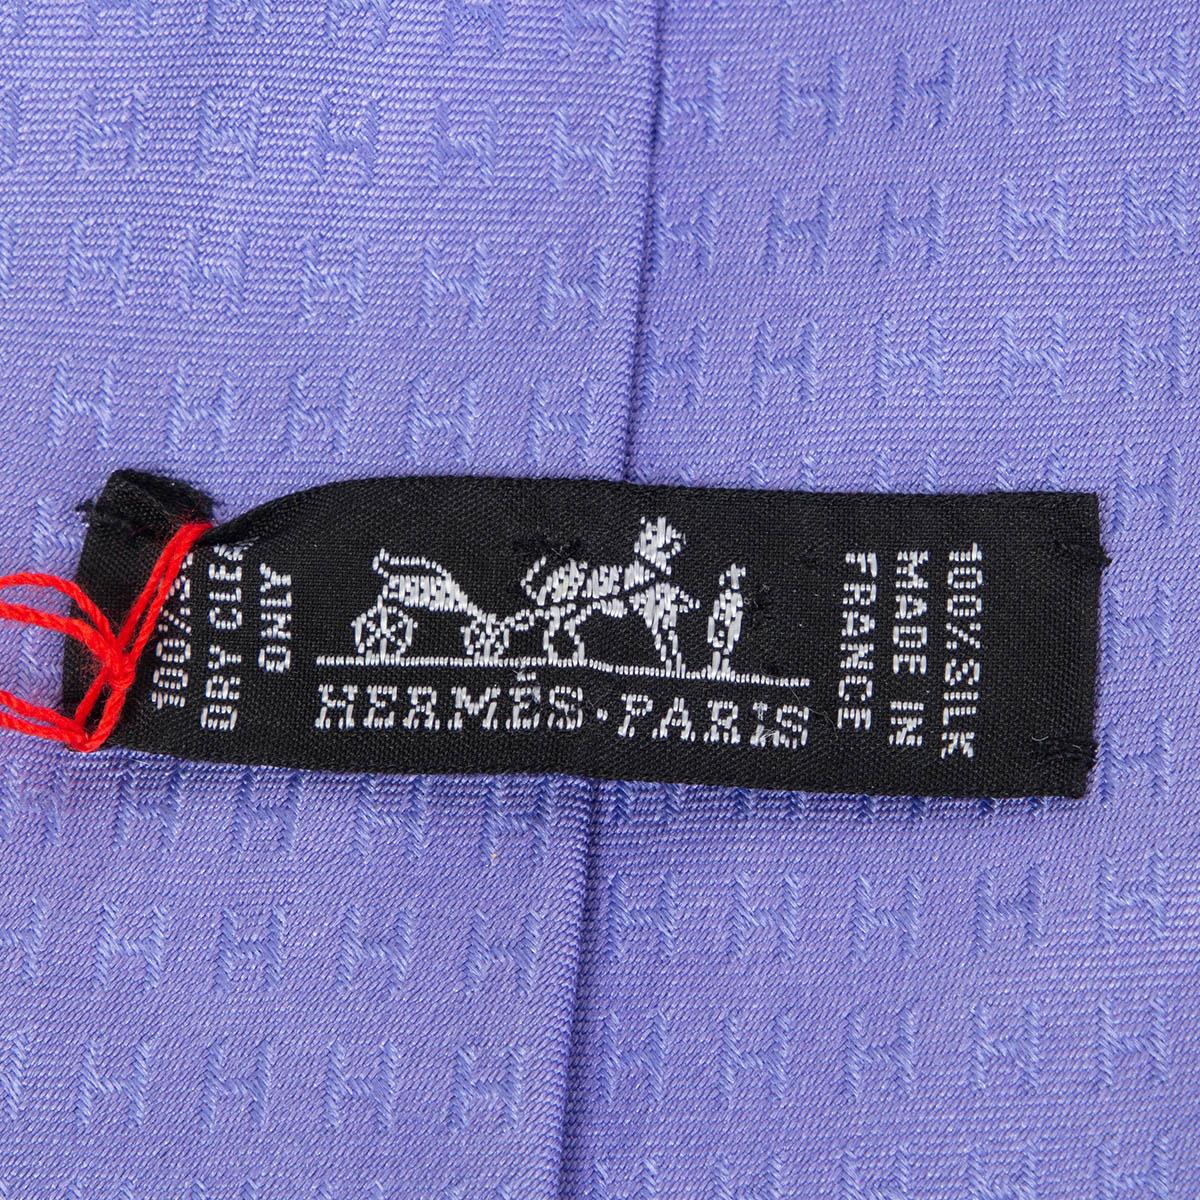 purple hermes tie